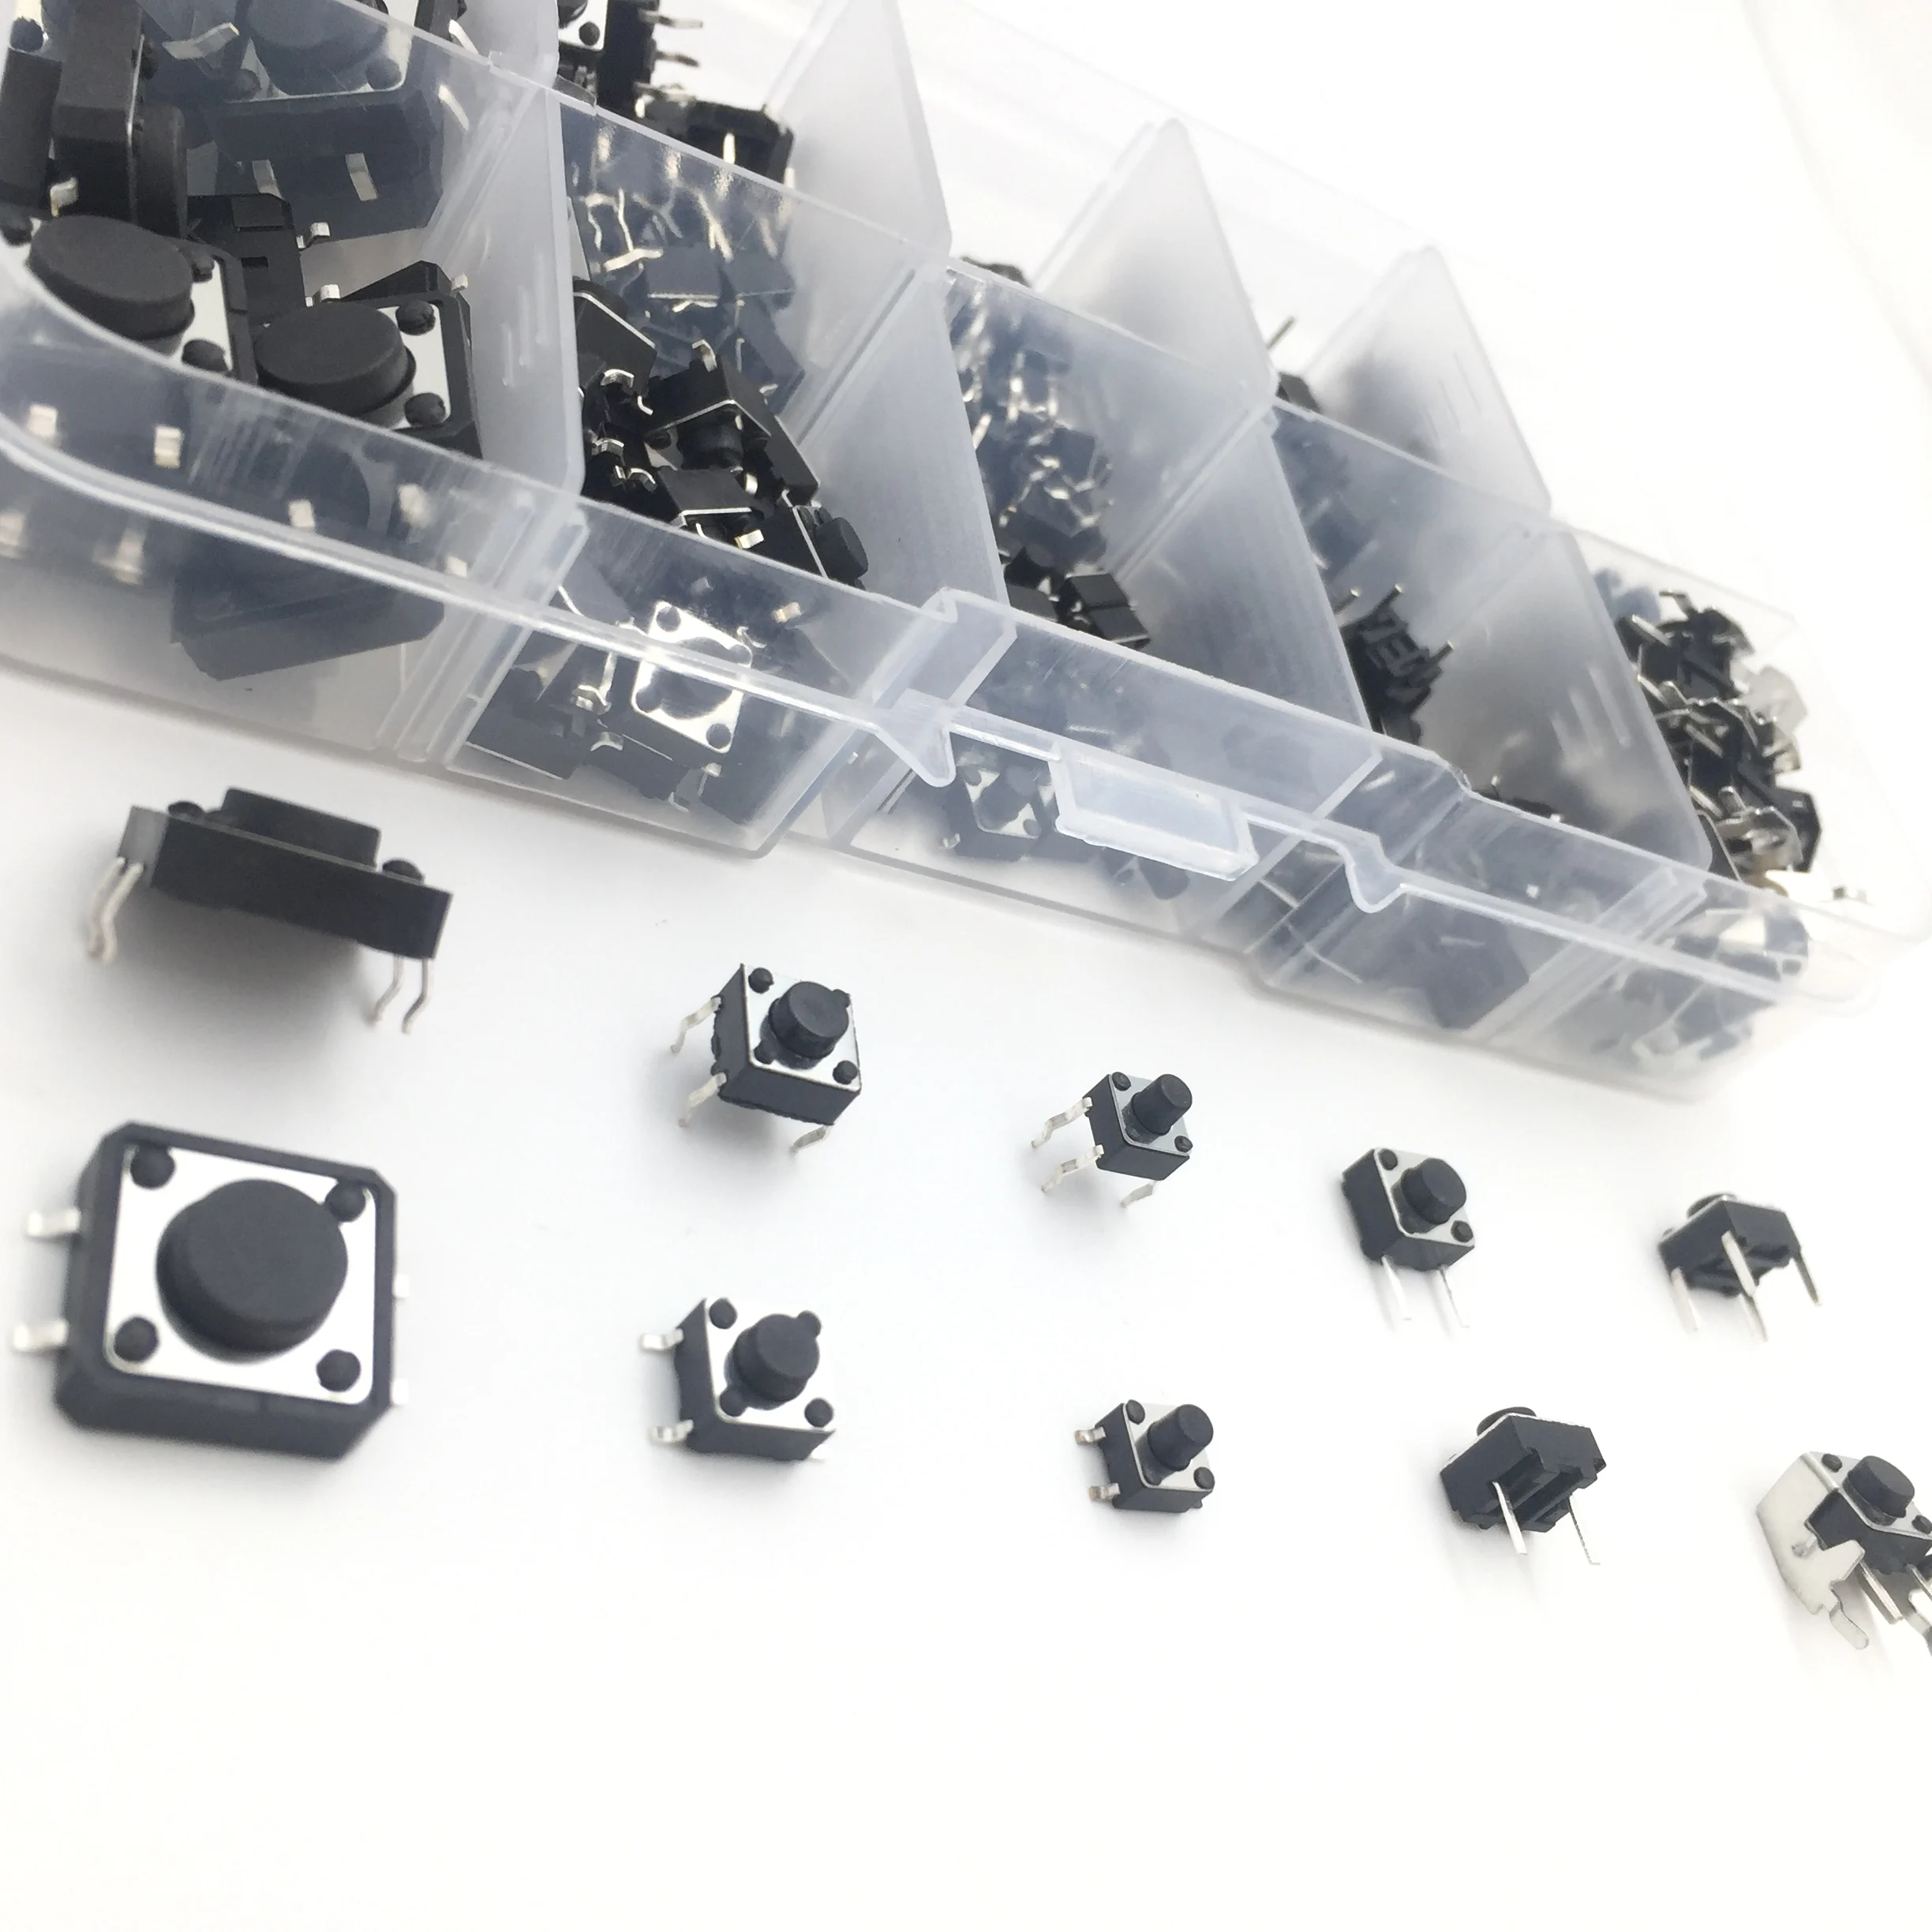 180 шт. тактильные кнопочные микропереключатели DIP SMD прямые самосбросы 12x12x5 6x6x5 4,5x4,5x5 12*12*5 6*6*5 для arduino